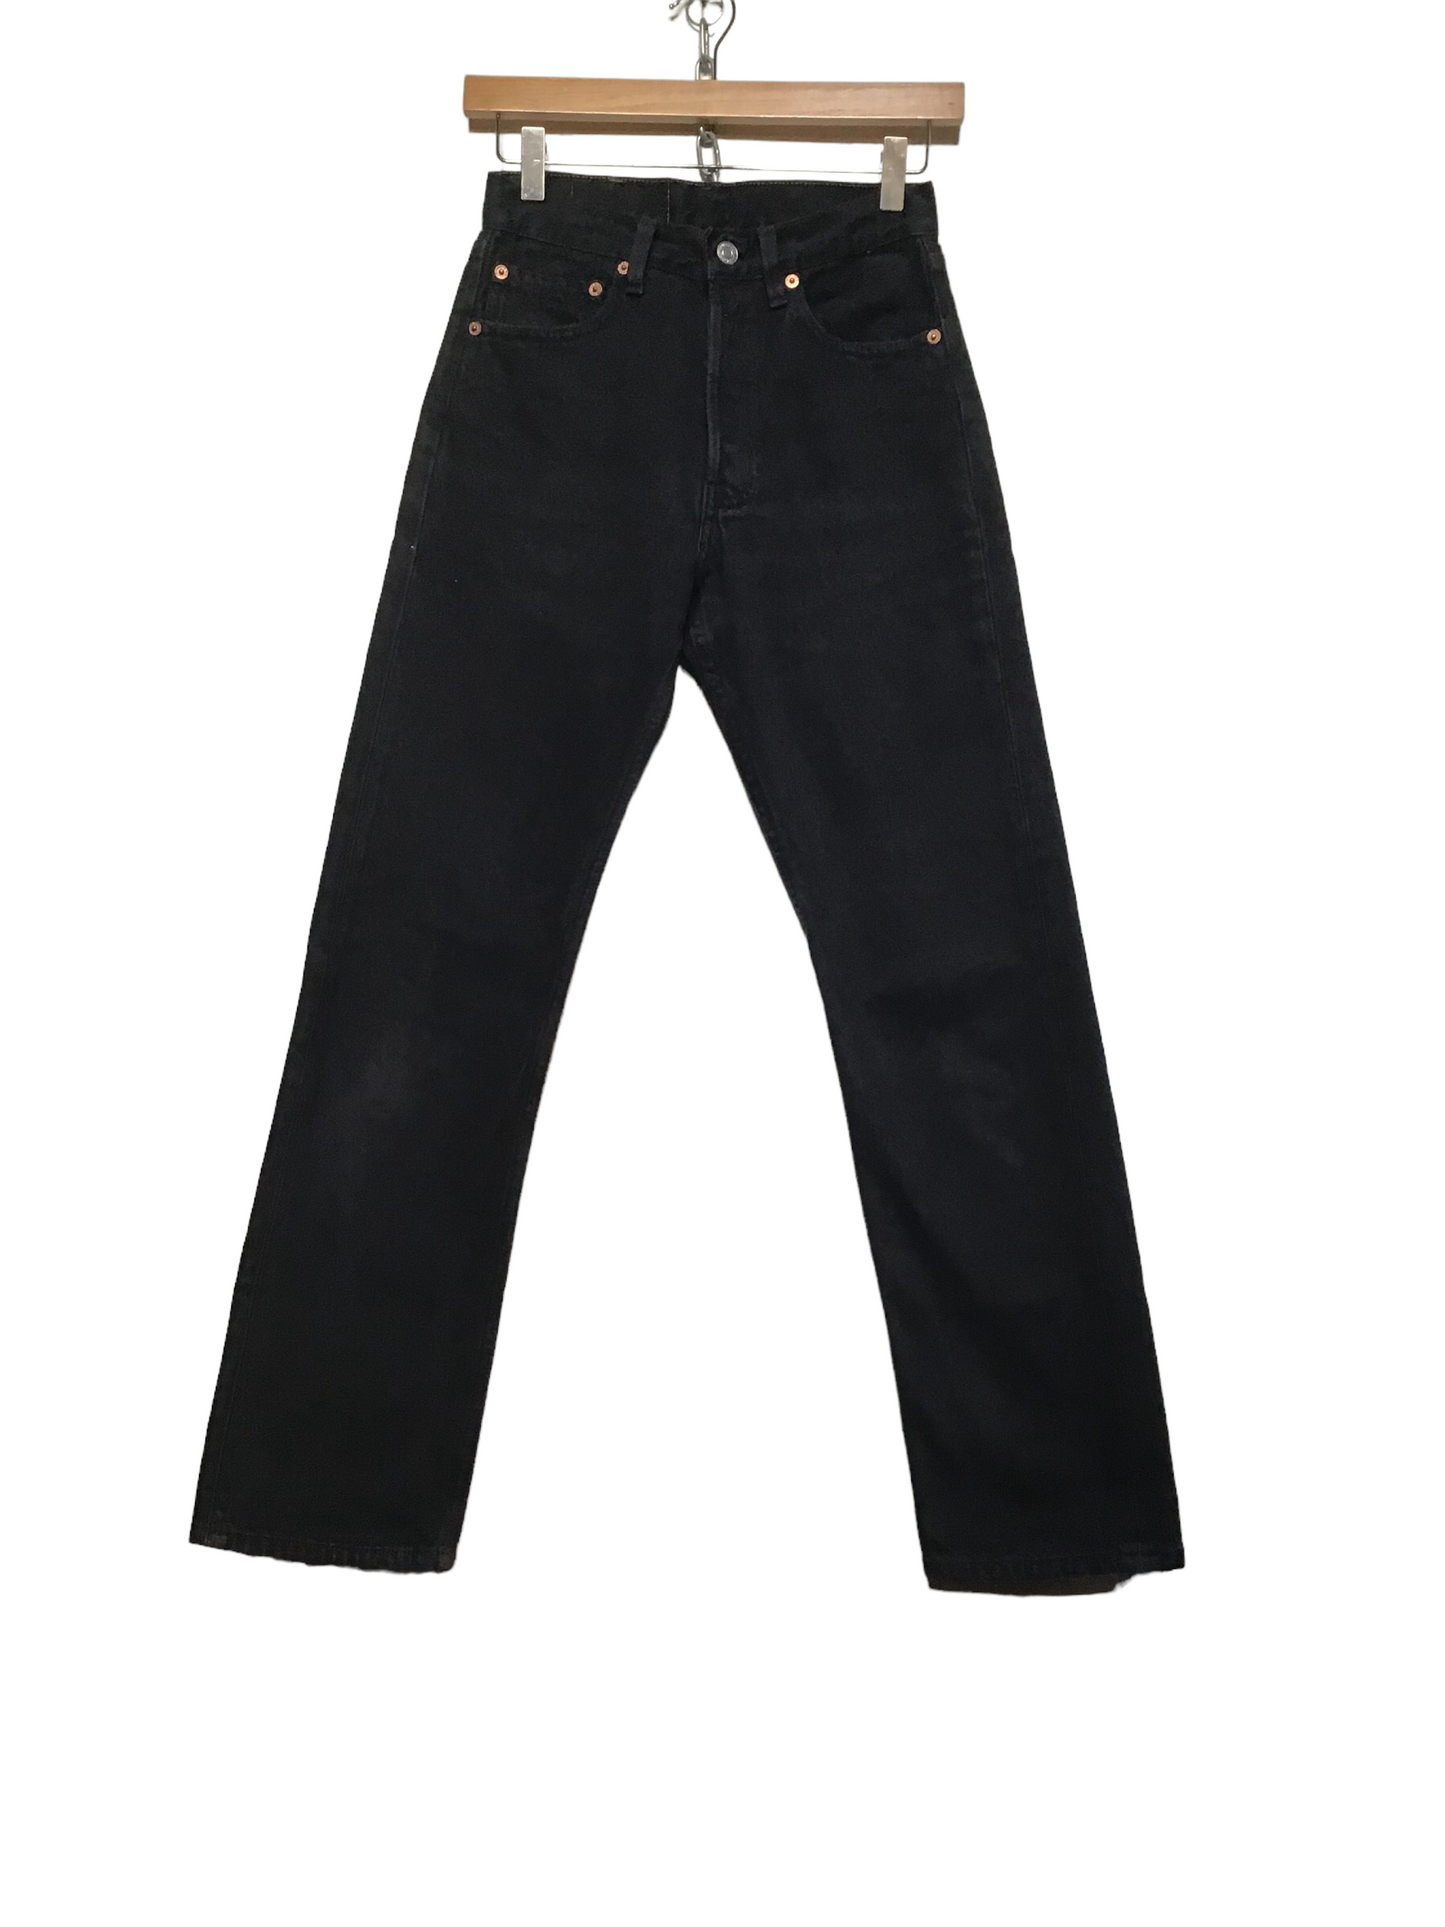 Levi 501 Black Jeans (27X30)